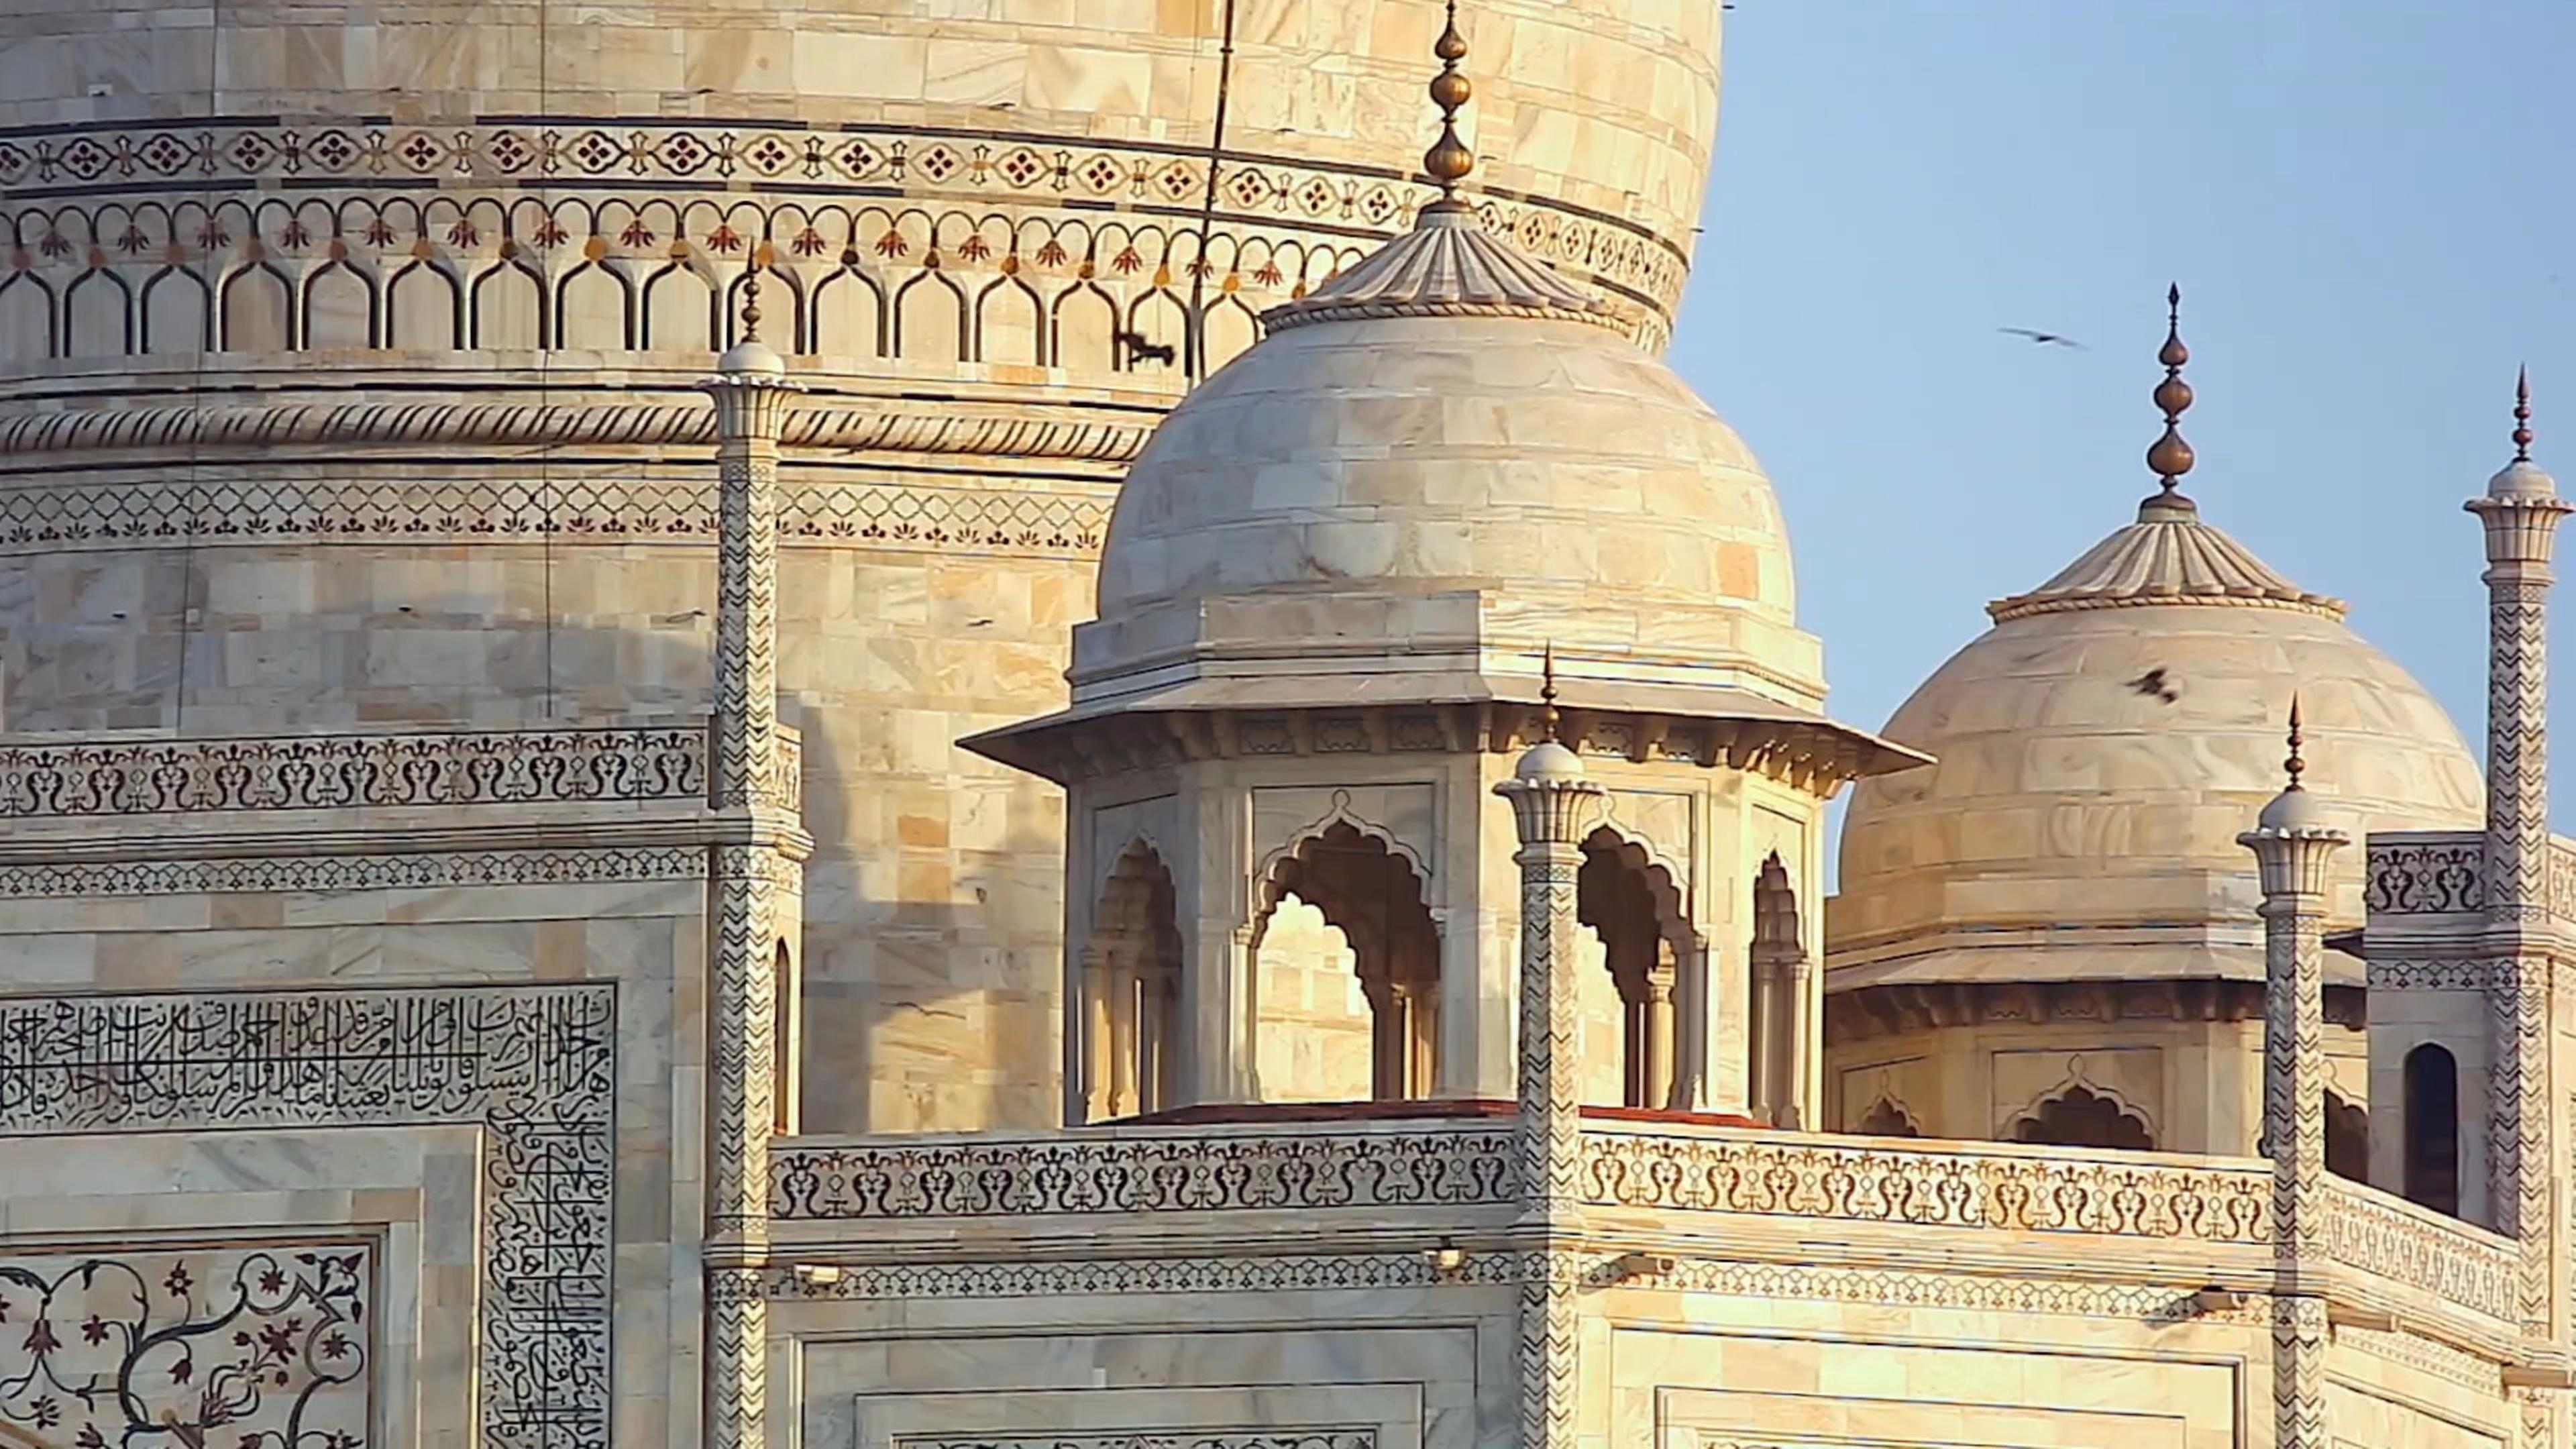  Außenansicht des Taj Mahal mit Kuppeltürmen.